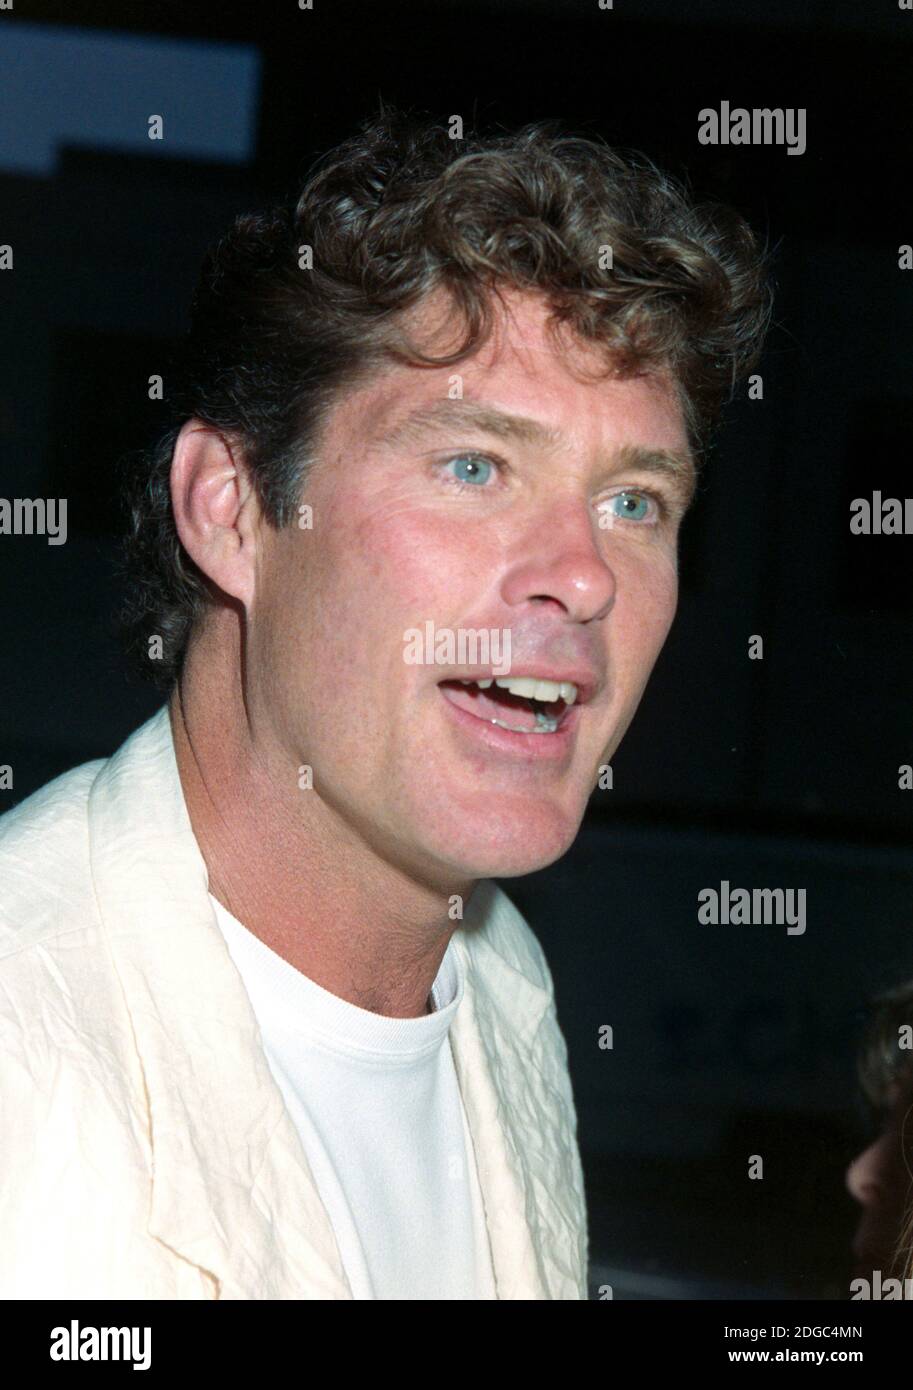 ARCHIVO: LOS ANGELES, CA. 28 de julio de 1994: El actor David Hasselhoff en el estreno de 'The Mask' en los Ángeles. Archivo foto © Paul Smith/Featurreflash Foto de stock